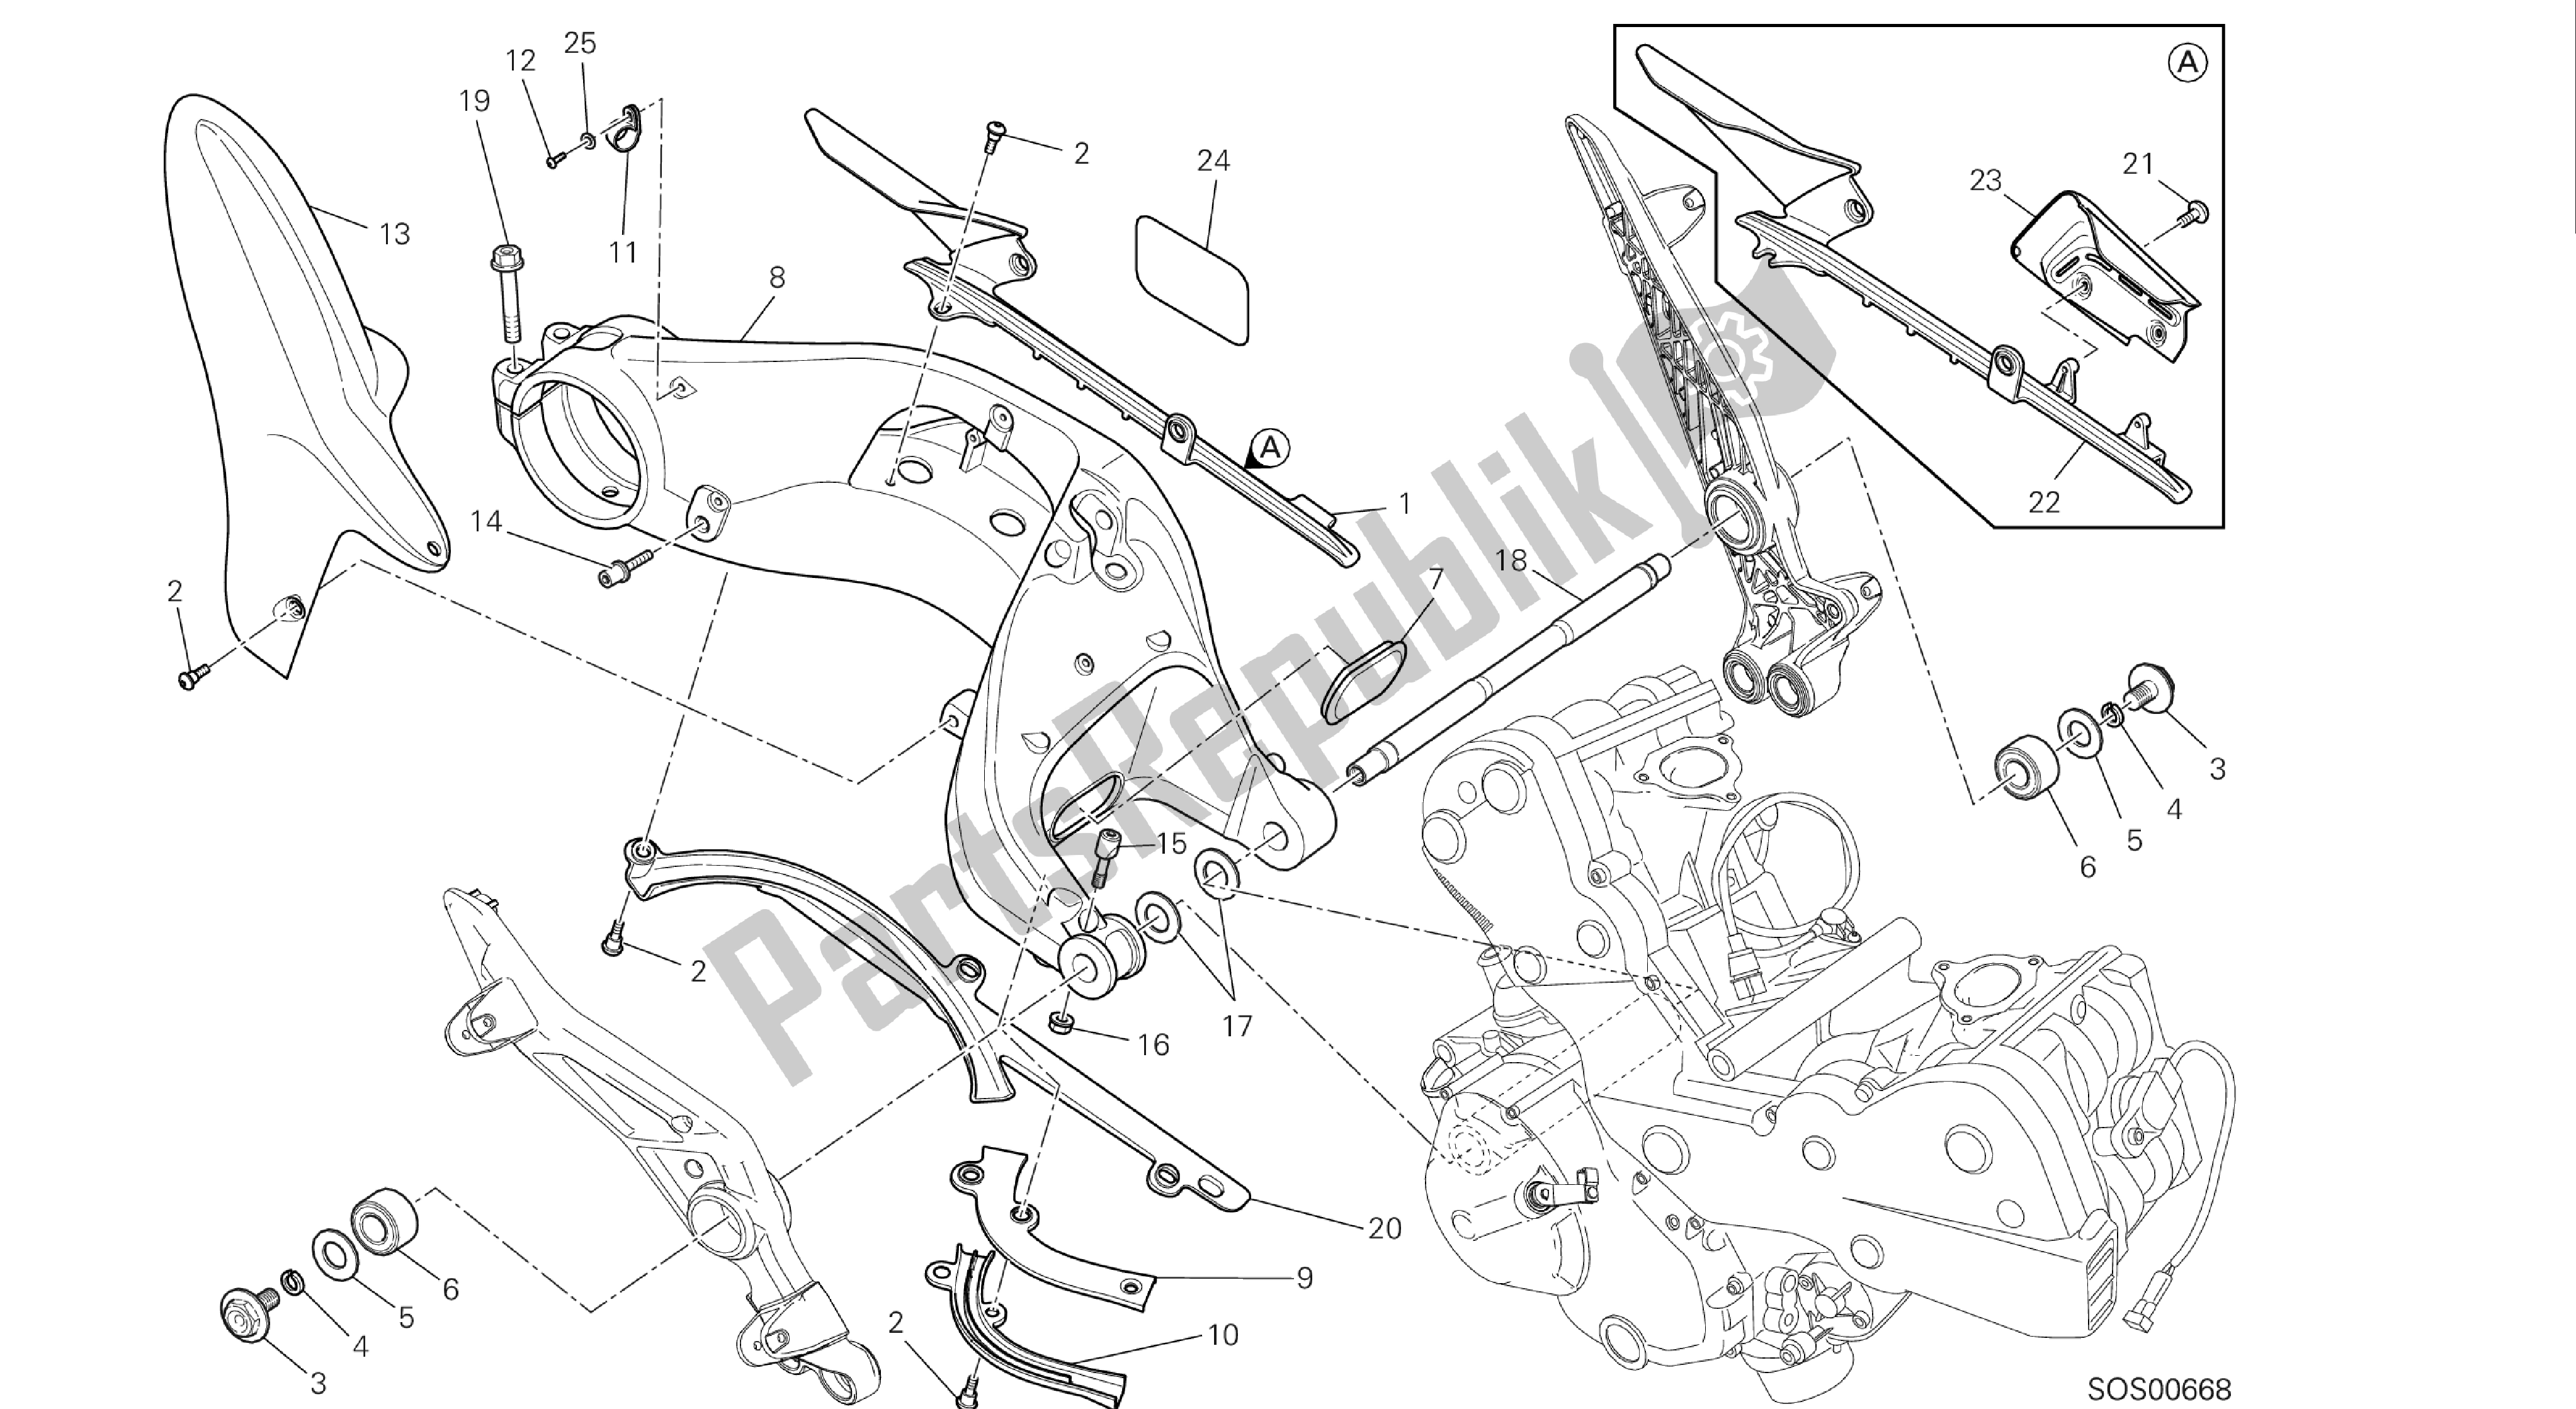 Todas las partes para Dibujo 28a - Forcellone Posteriore [mod: Hym-sp; Xst: Aus, Eur, Fra, Jap] Grupo Fr Ame de Ducati Hypermotard 821 2013